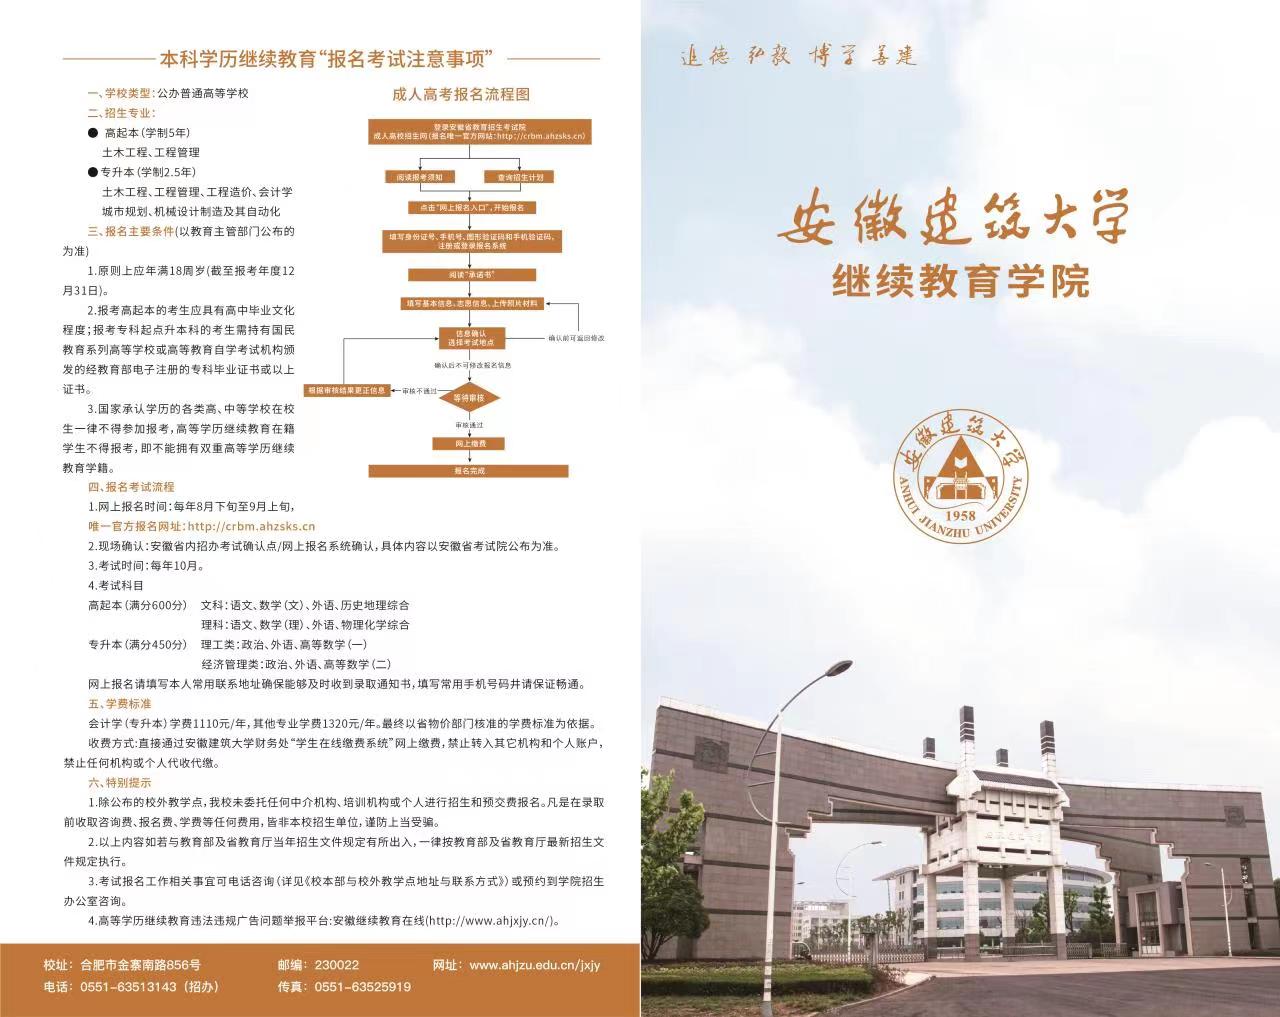 安徽建筑大学继续教育学院宣传手册1.jpg